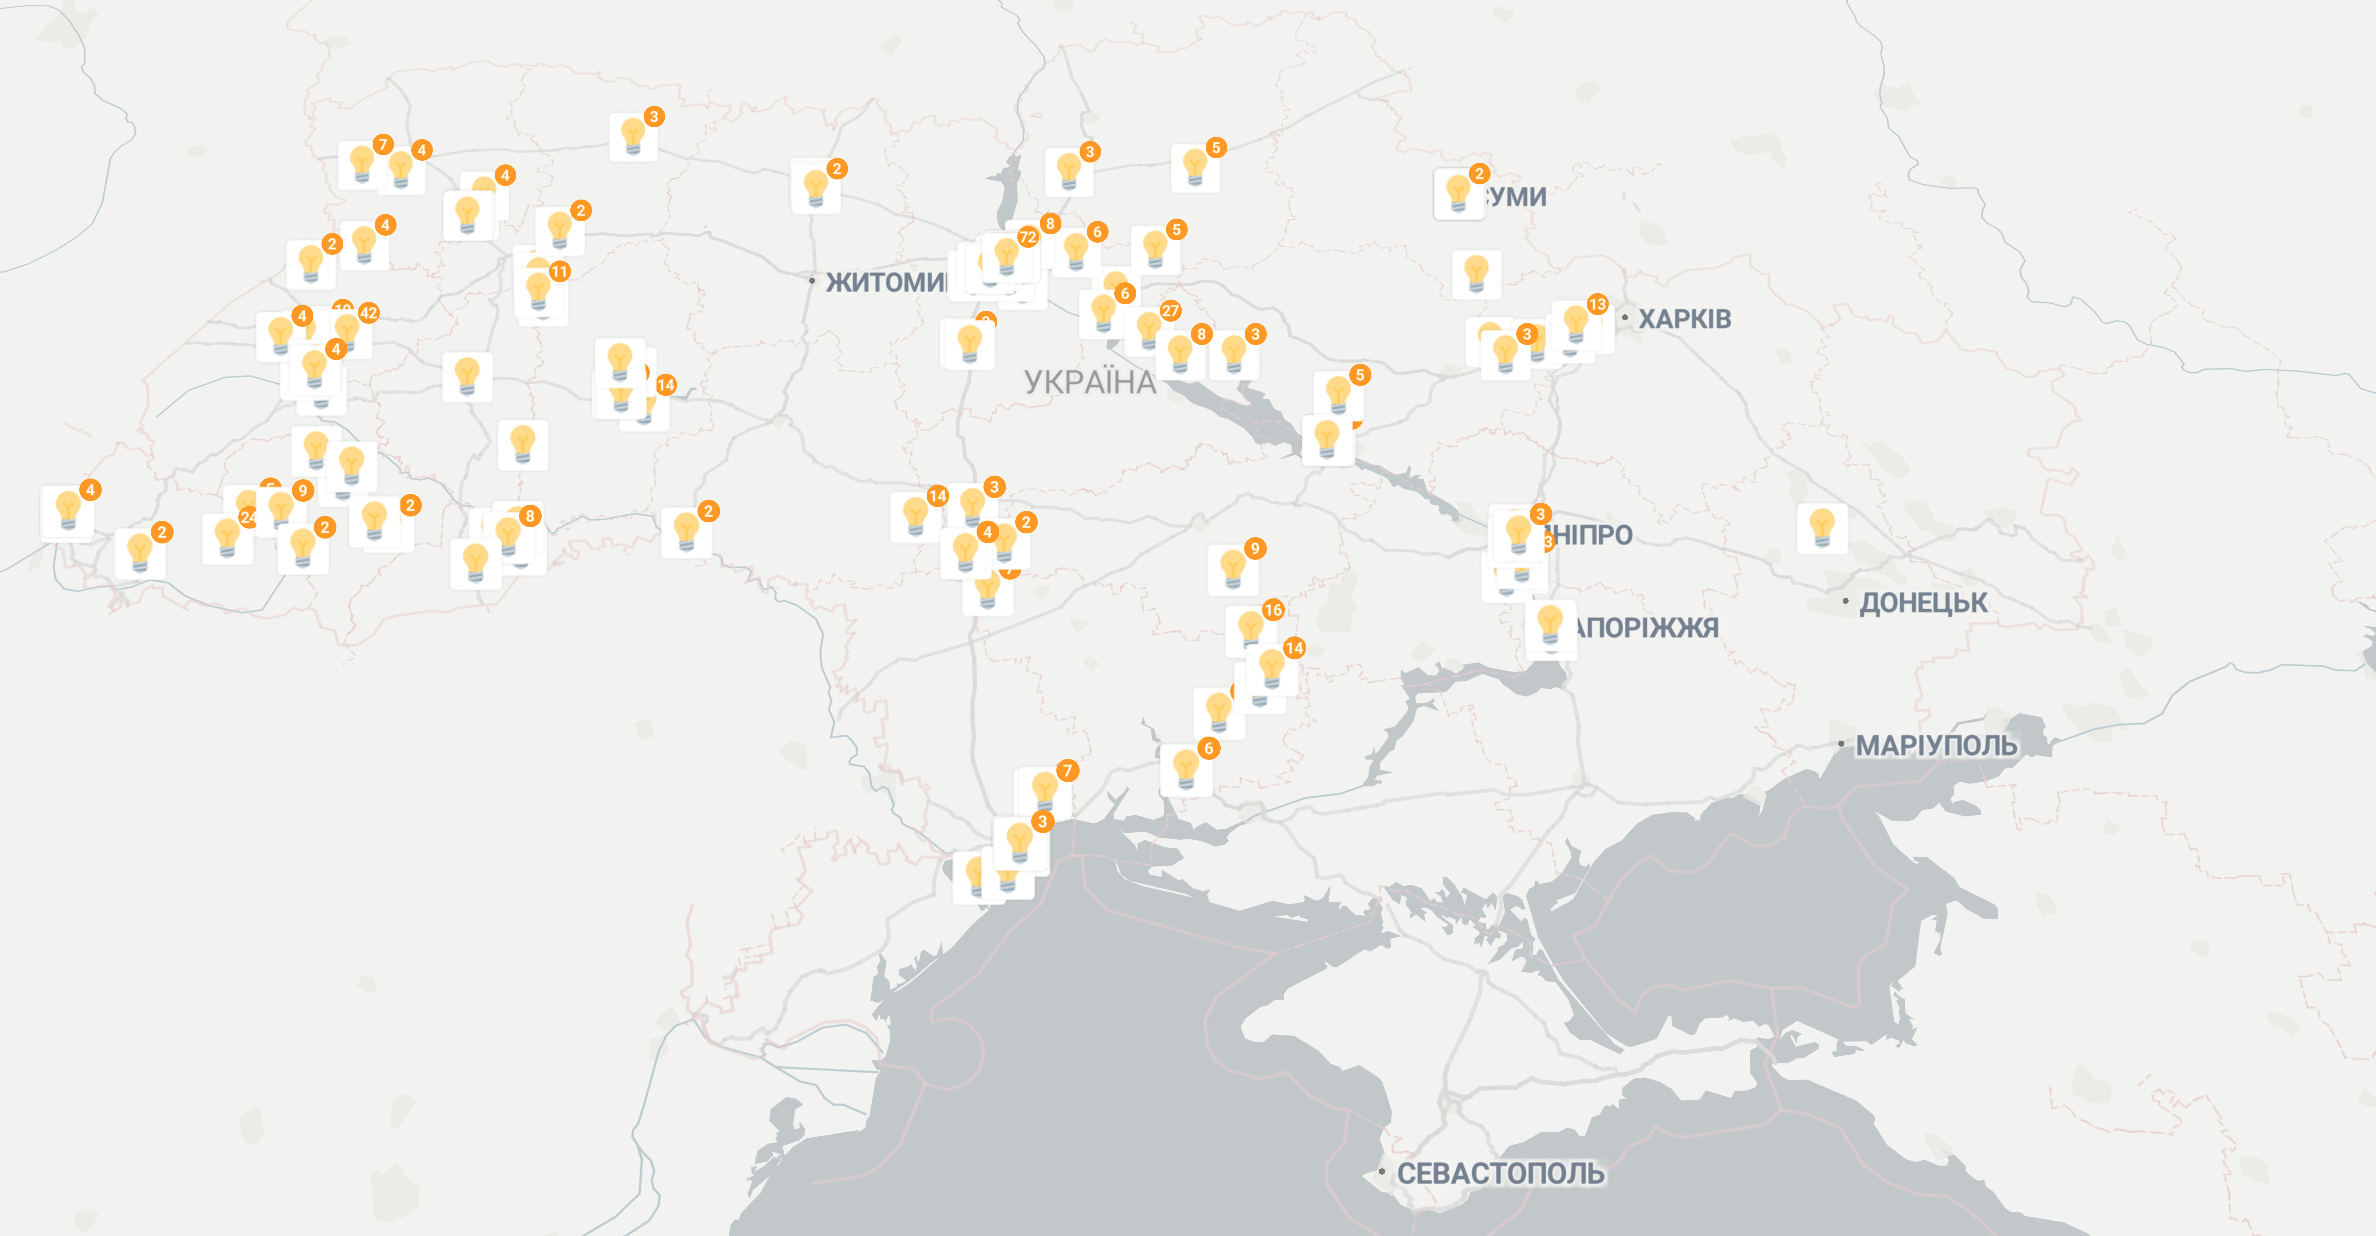 В Украине создали онлайн-карту с заведениями, в которых всегда есть свет